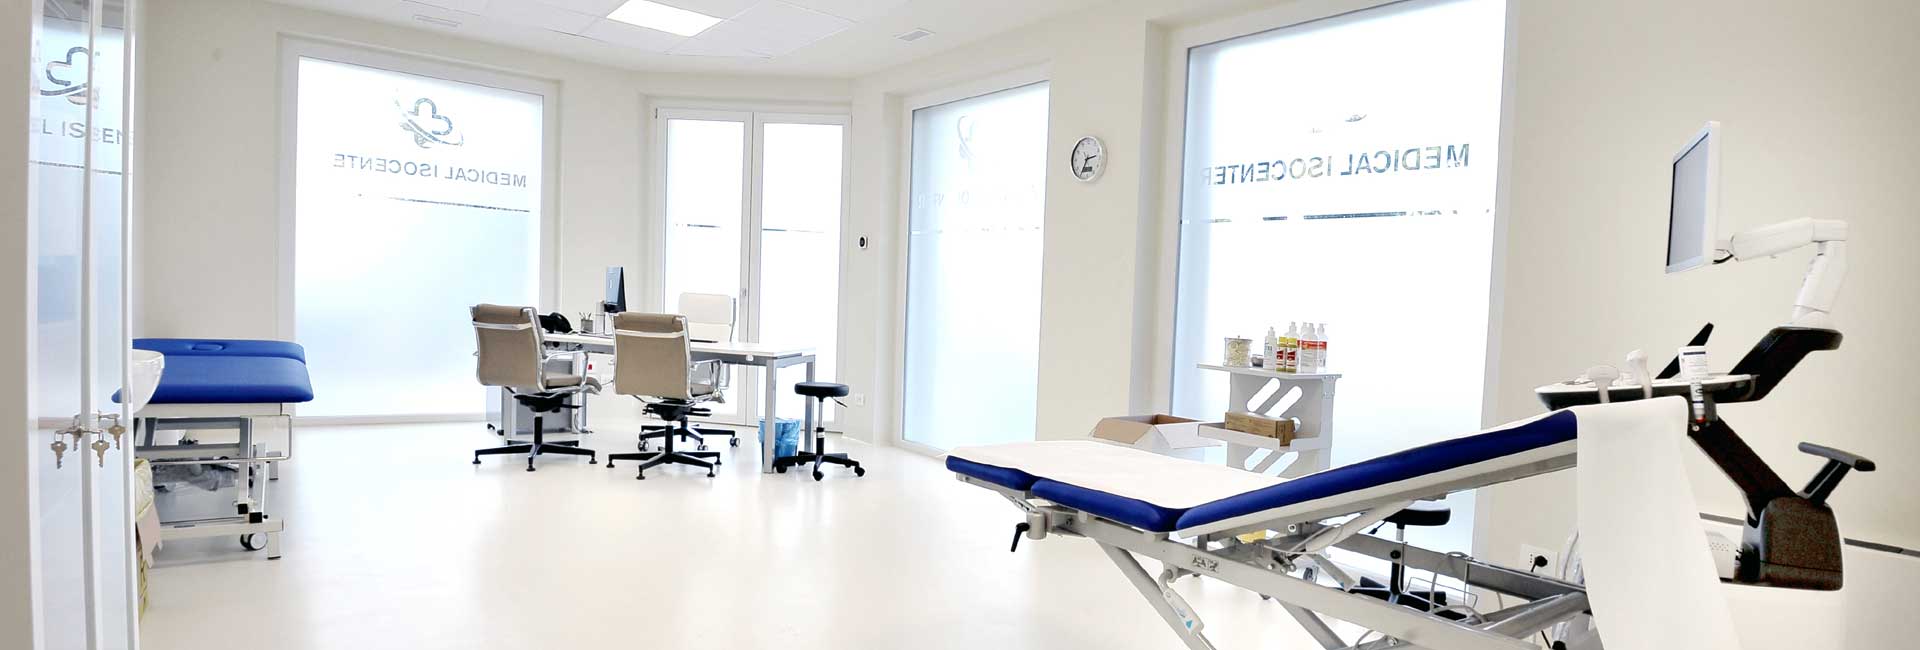 Medical Isocenter - Centro Clinico Isorella (Brescia) per prestazioni sanitarie ed esami medici in centro diagnostico privato